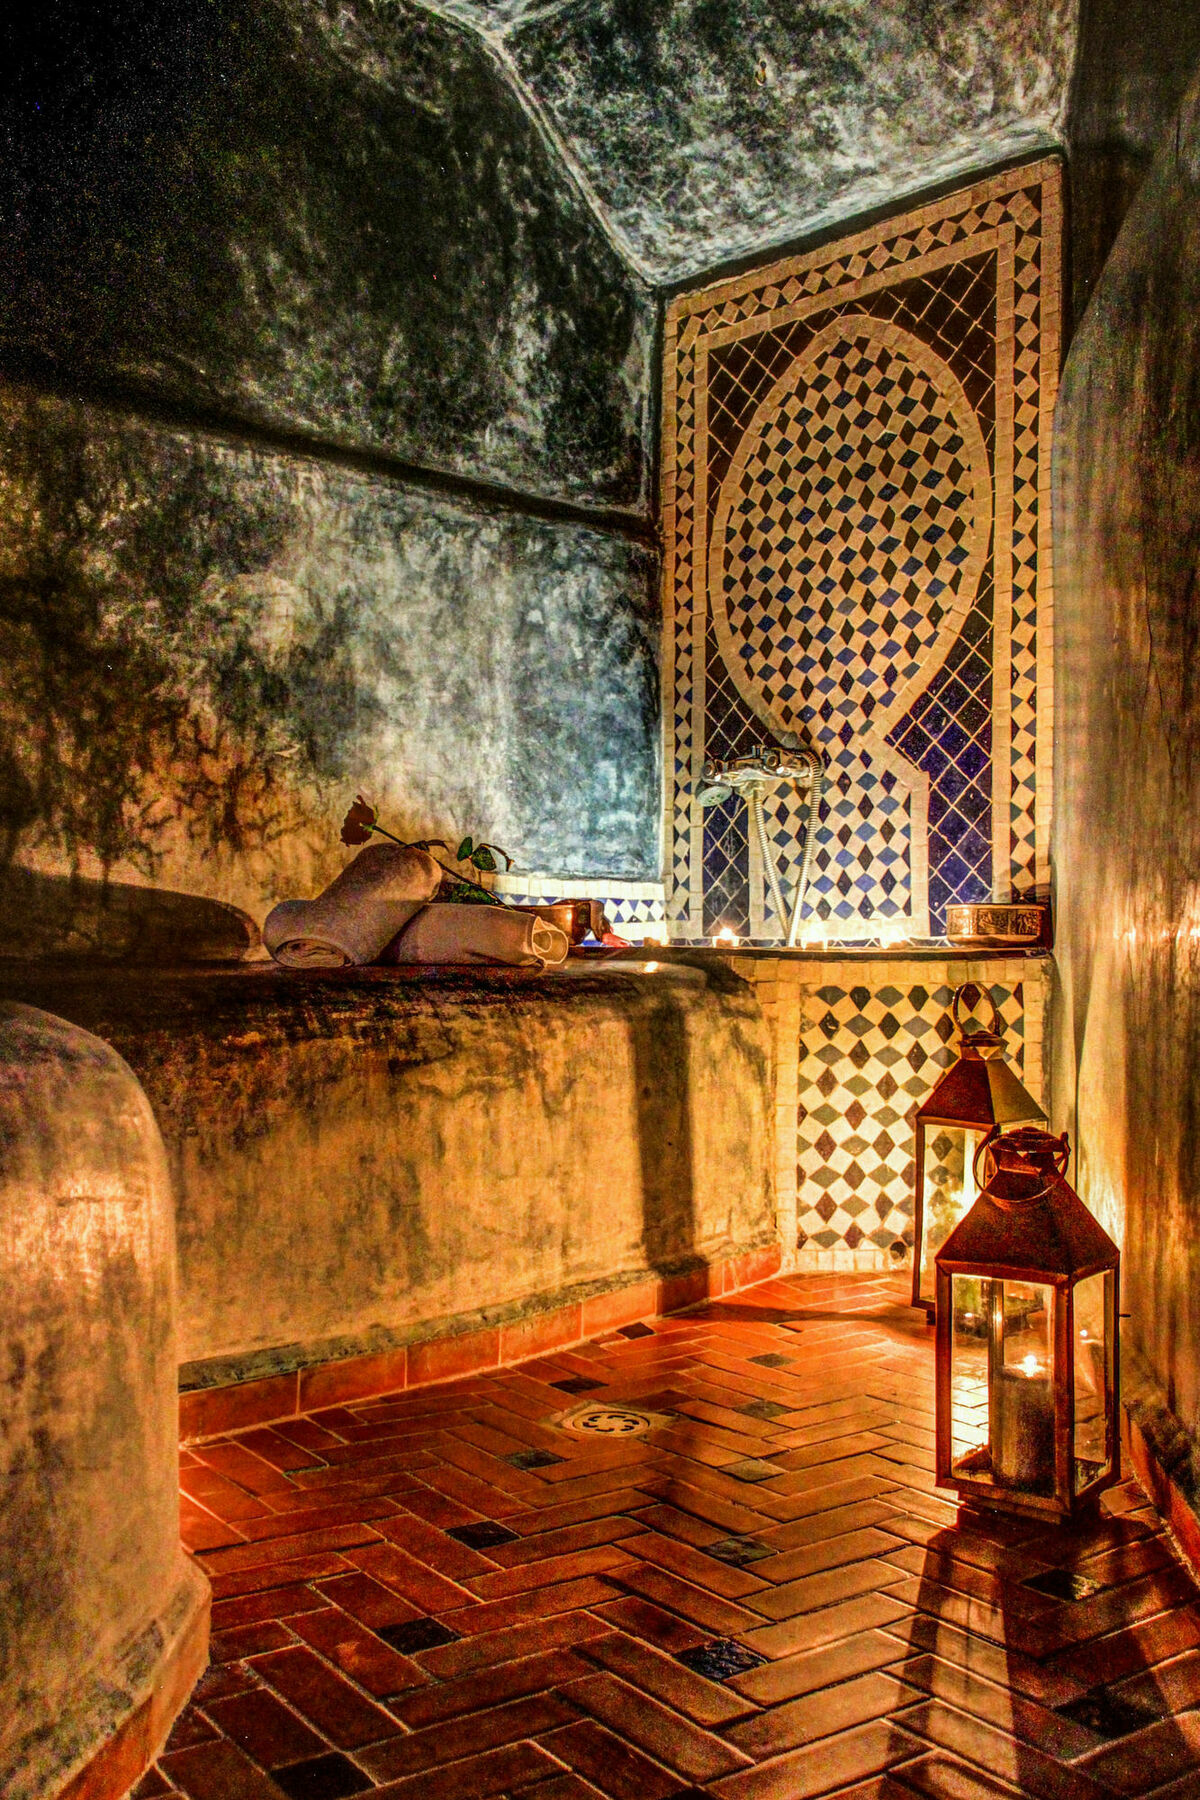 Casa Lila & Spa Essaouira Exterior photo